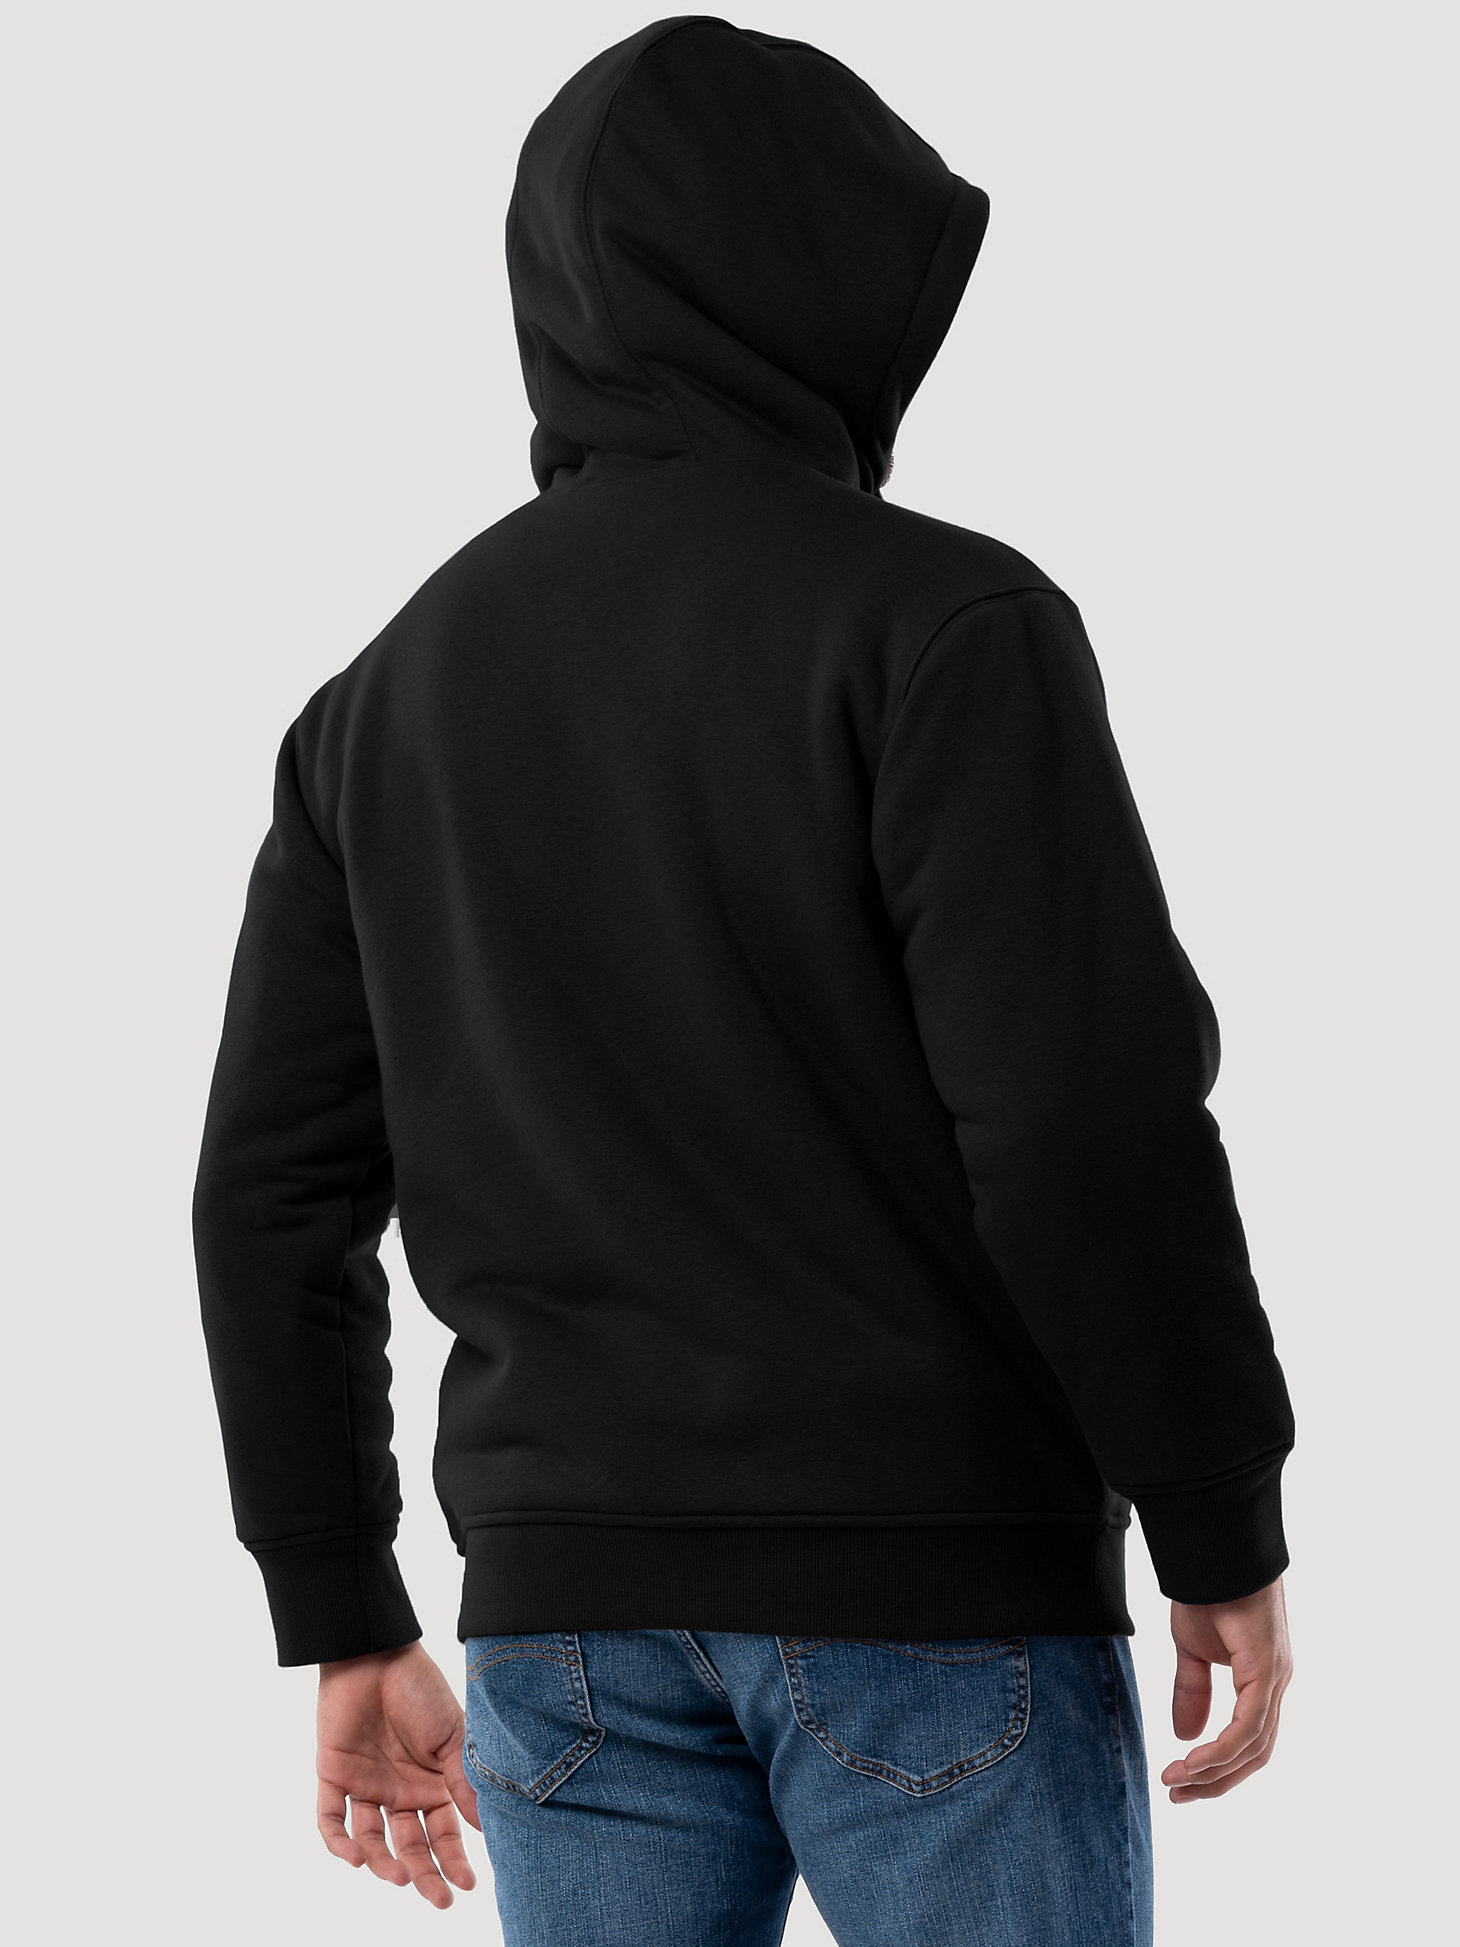 Wrangler® Workwear Sherpa Lined Hooded Sweatshirt in Black alternative view 2